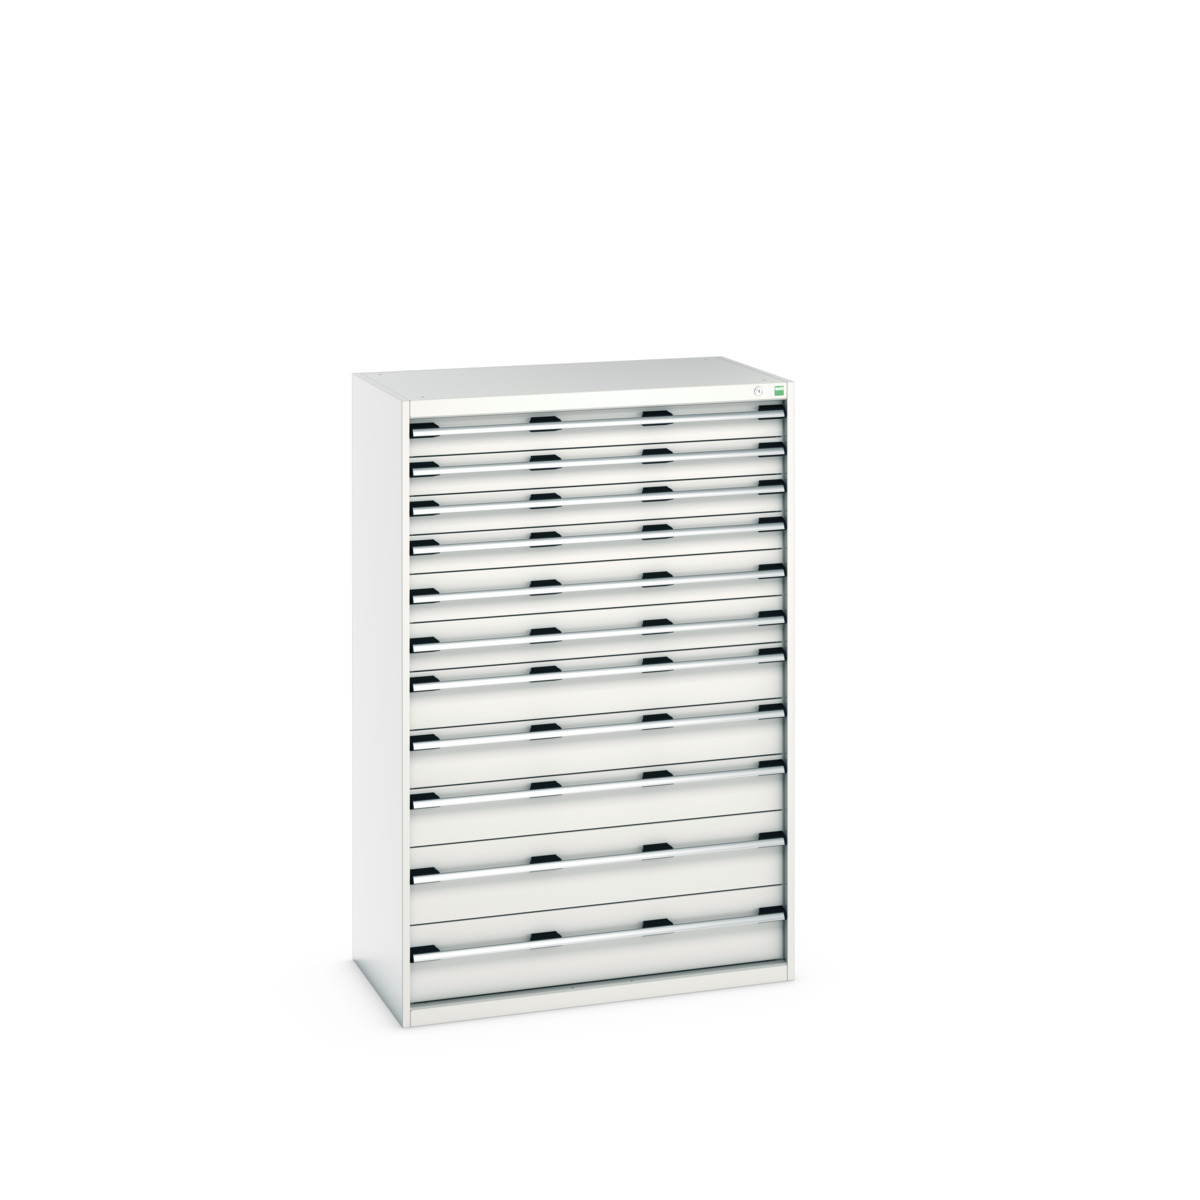 40021045.16V - cubio drawer cabinet